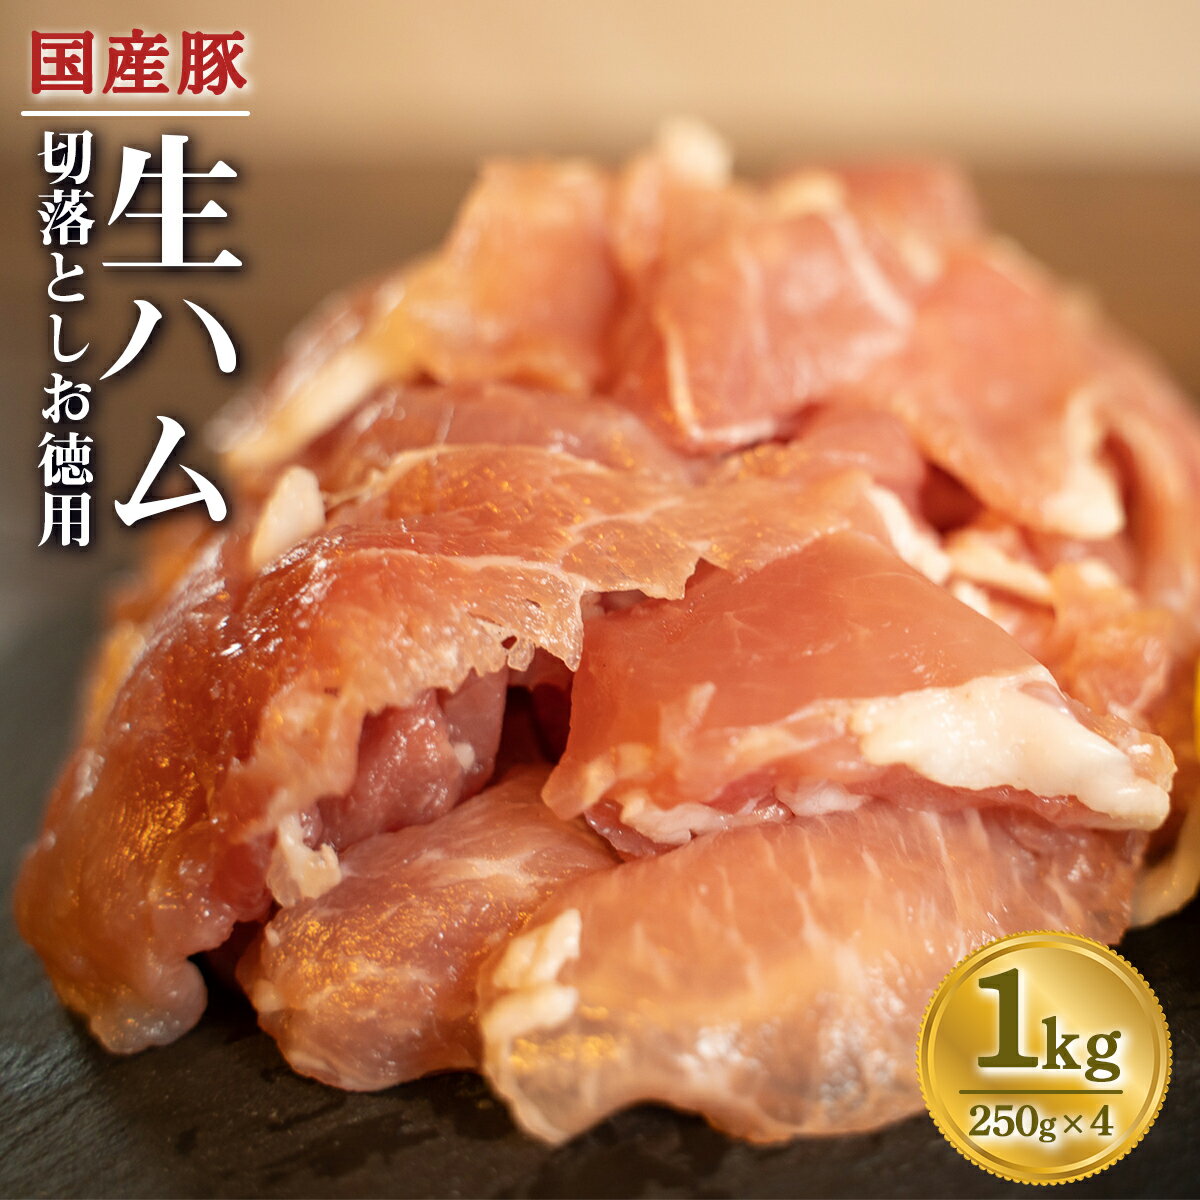 【ふるさと納税】国産 豚 生ハム 切落し1kg 小分け 25